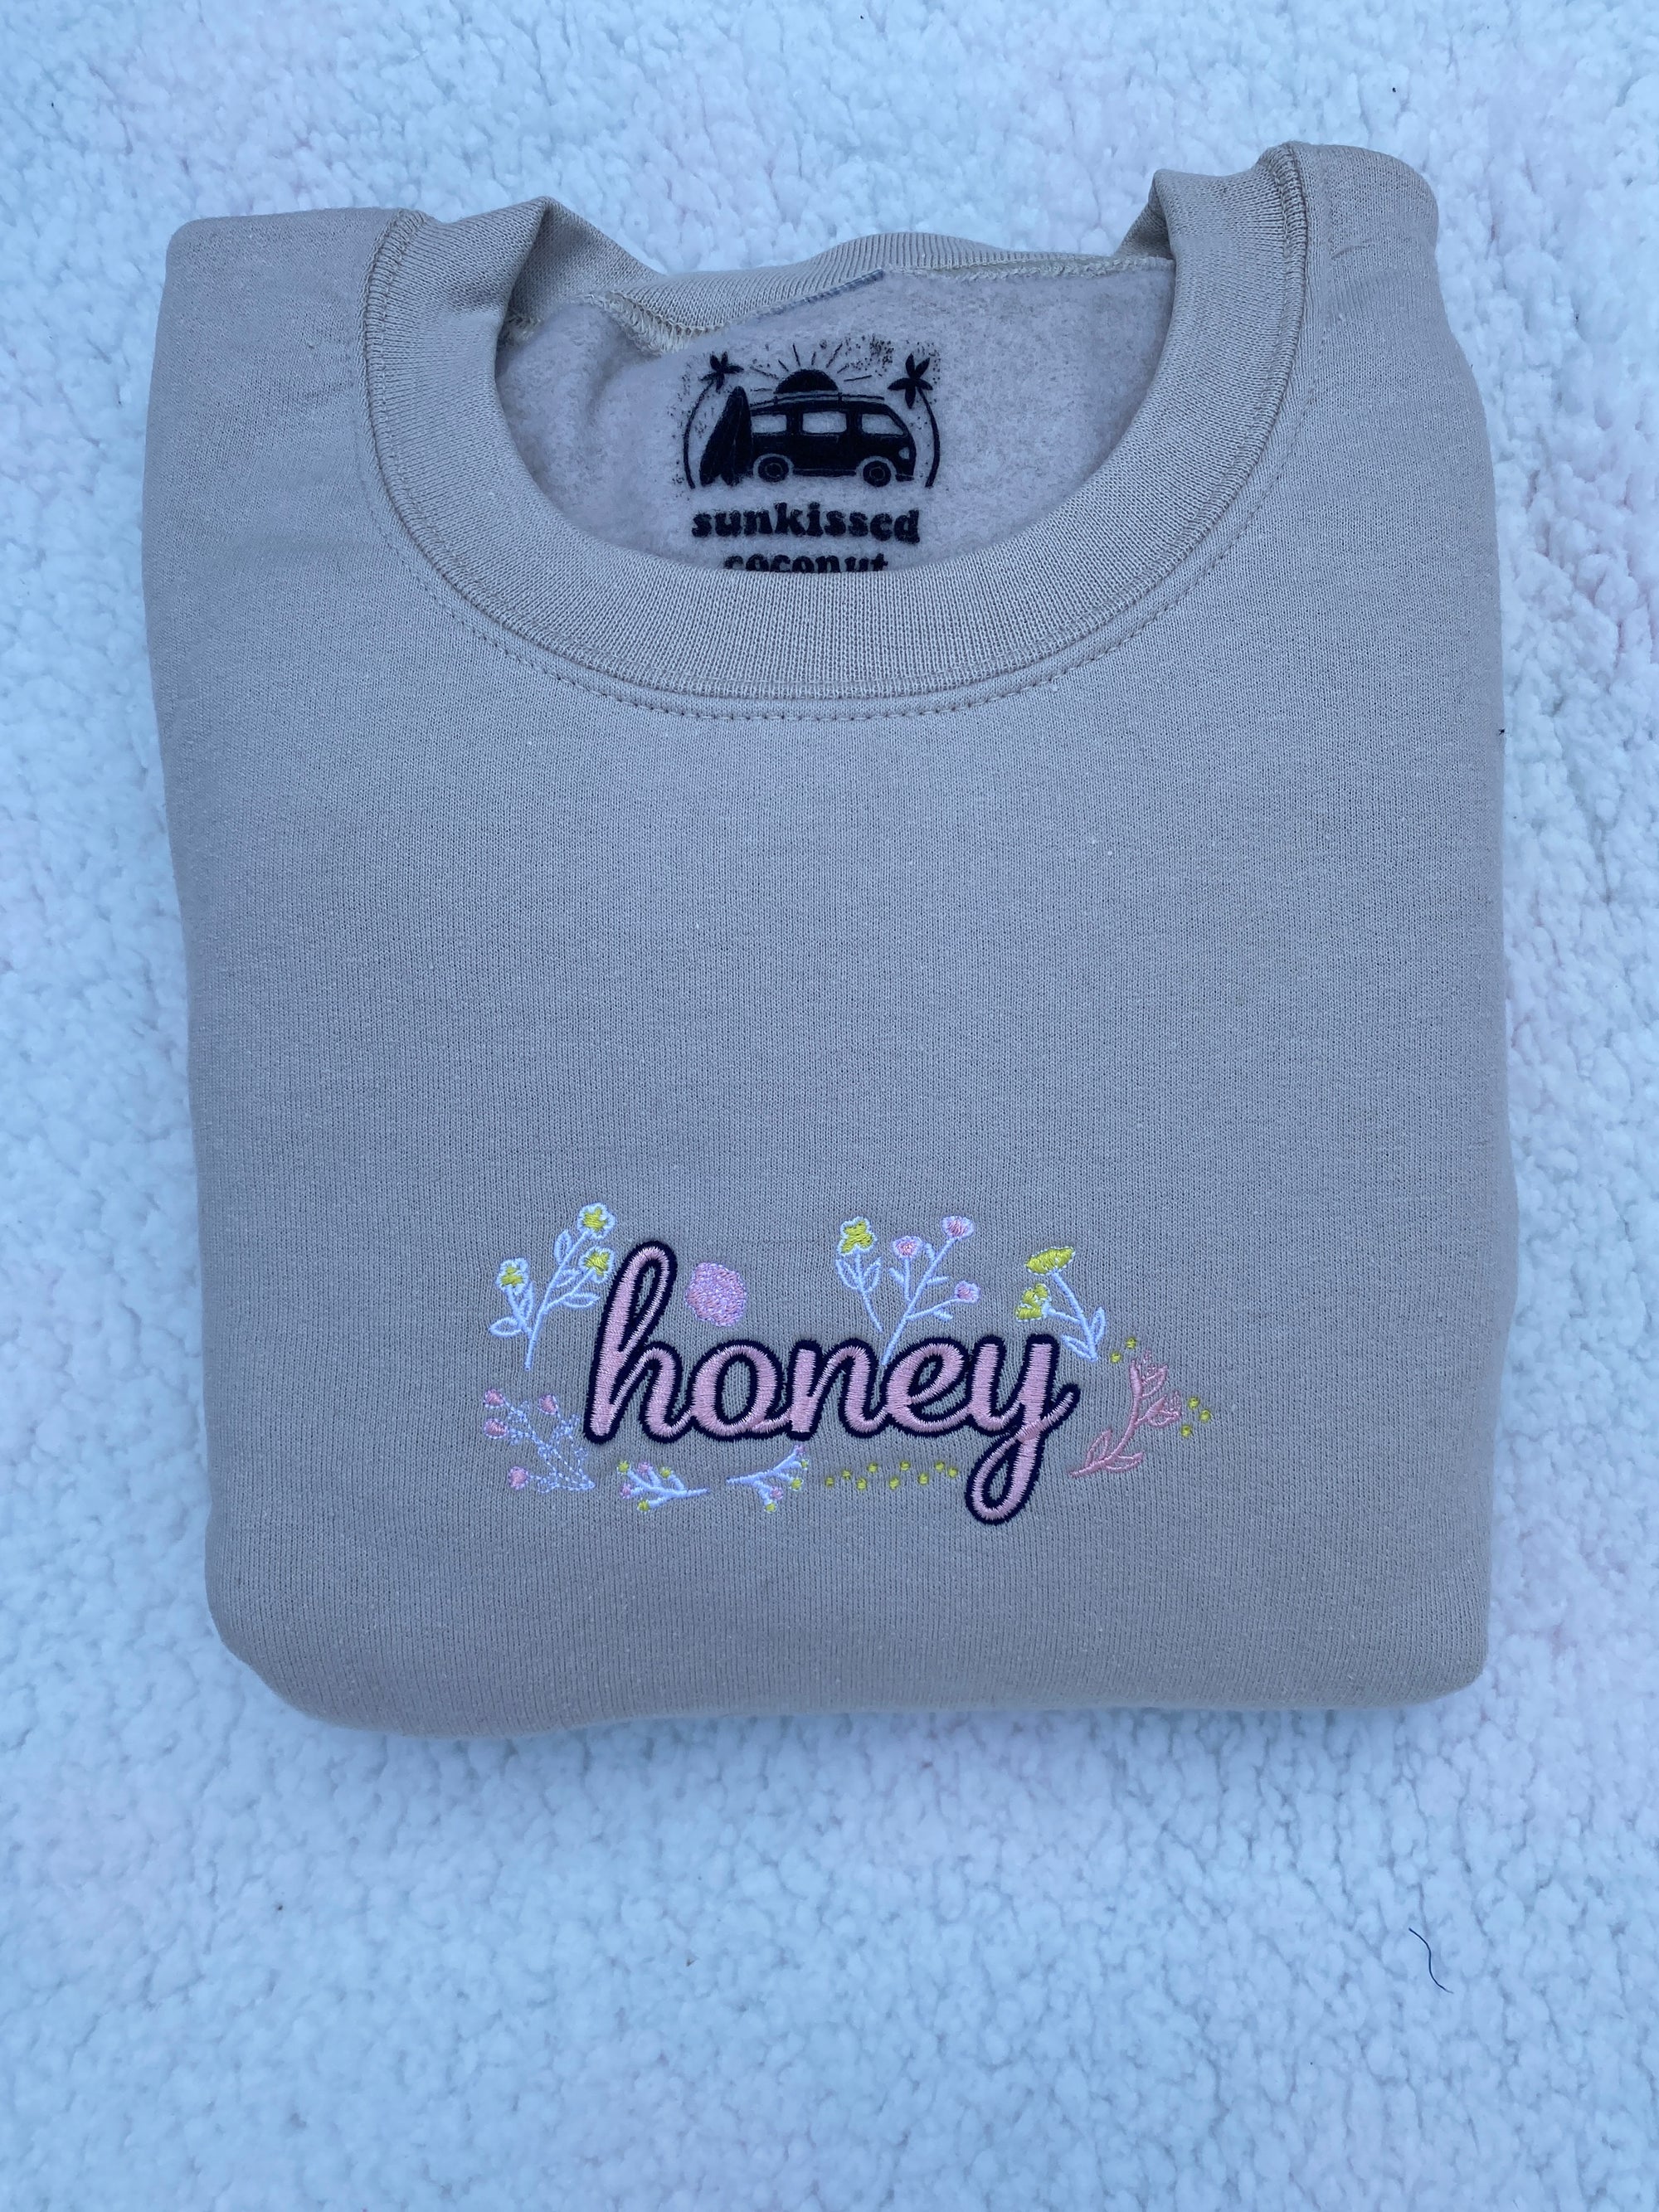 Honey sweatshirt